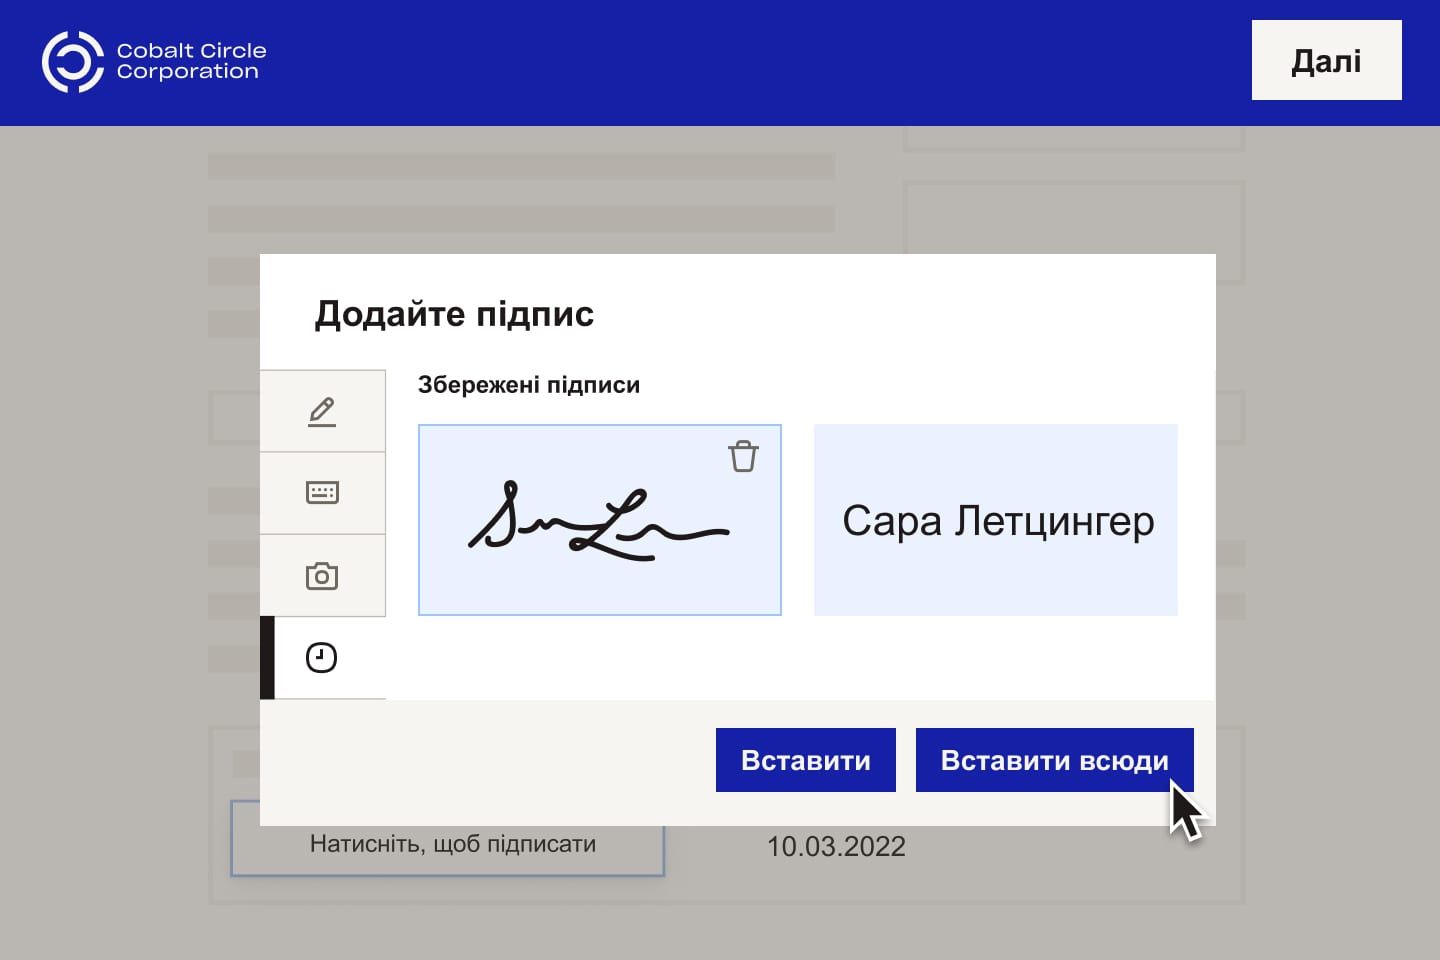 Користувачеві пропонується вставити електронний підпис в окреме або кілька полів